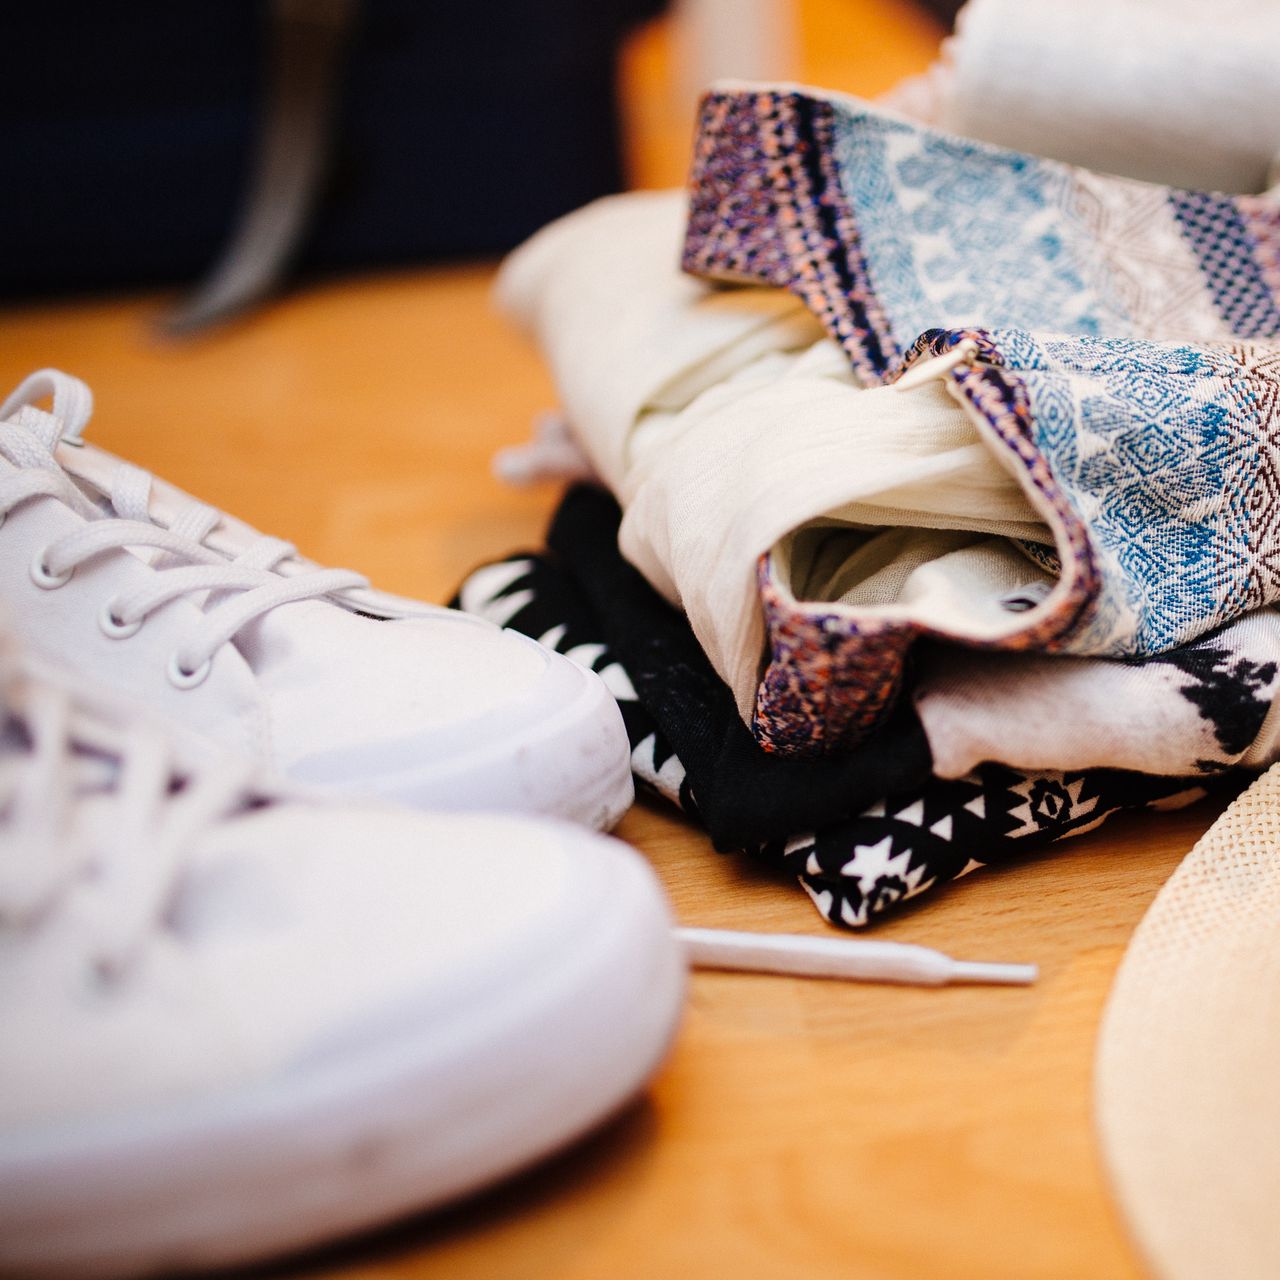 Одежда и обувь. Текстиль одежда. Текстильные вещи. Одежда обувь текстиль.